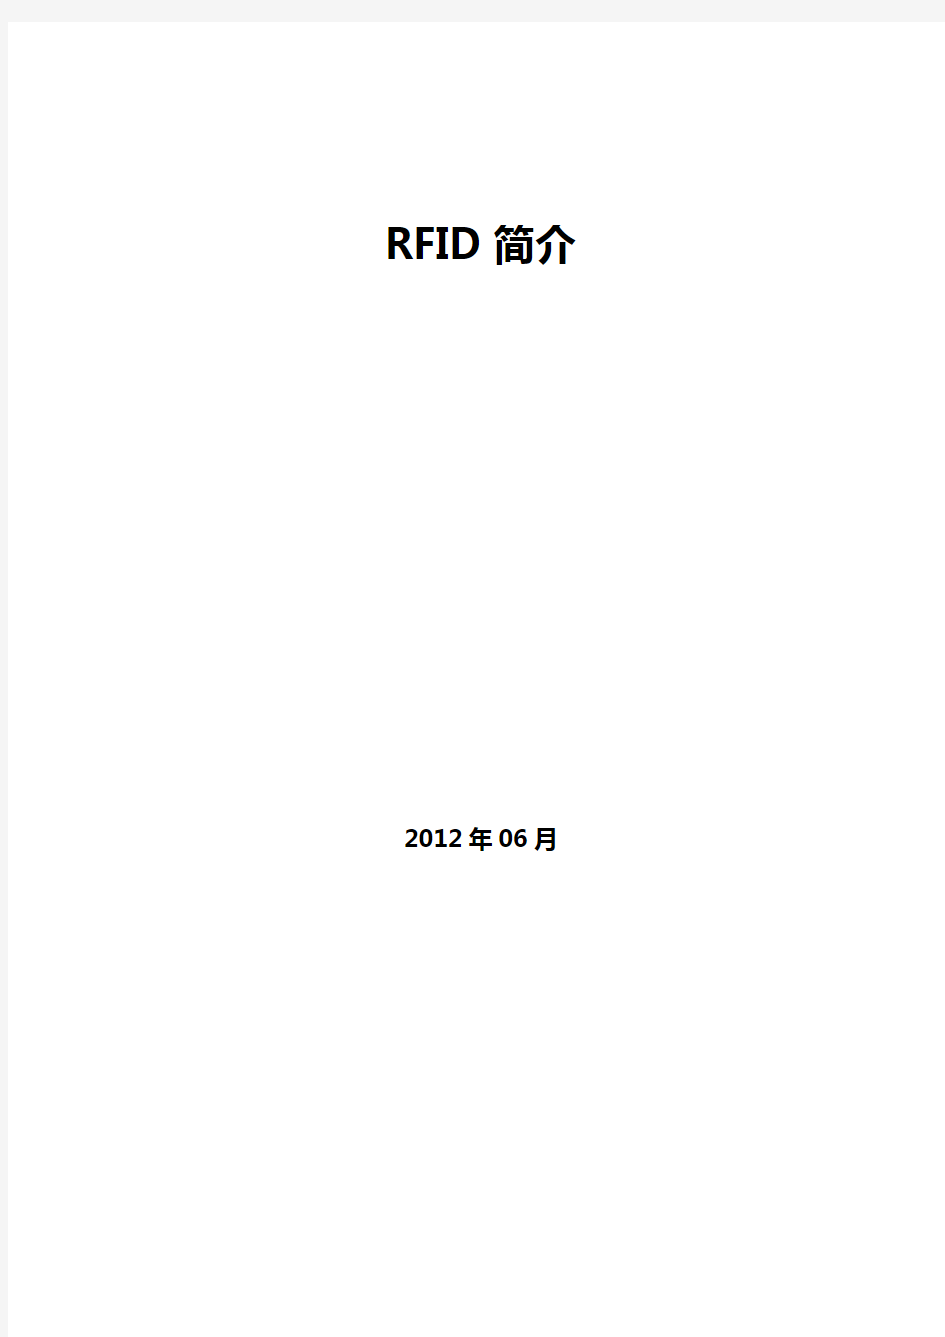 RFID简介